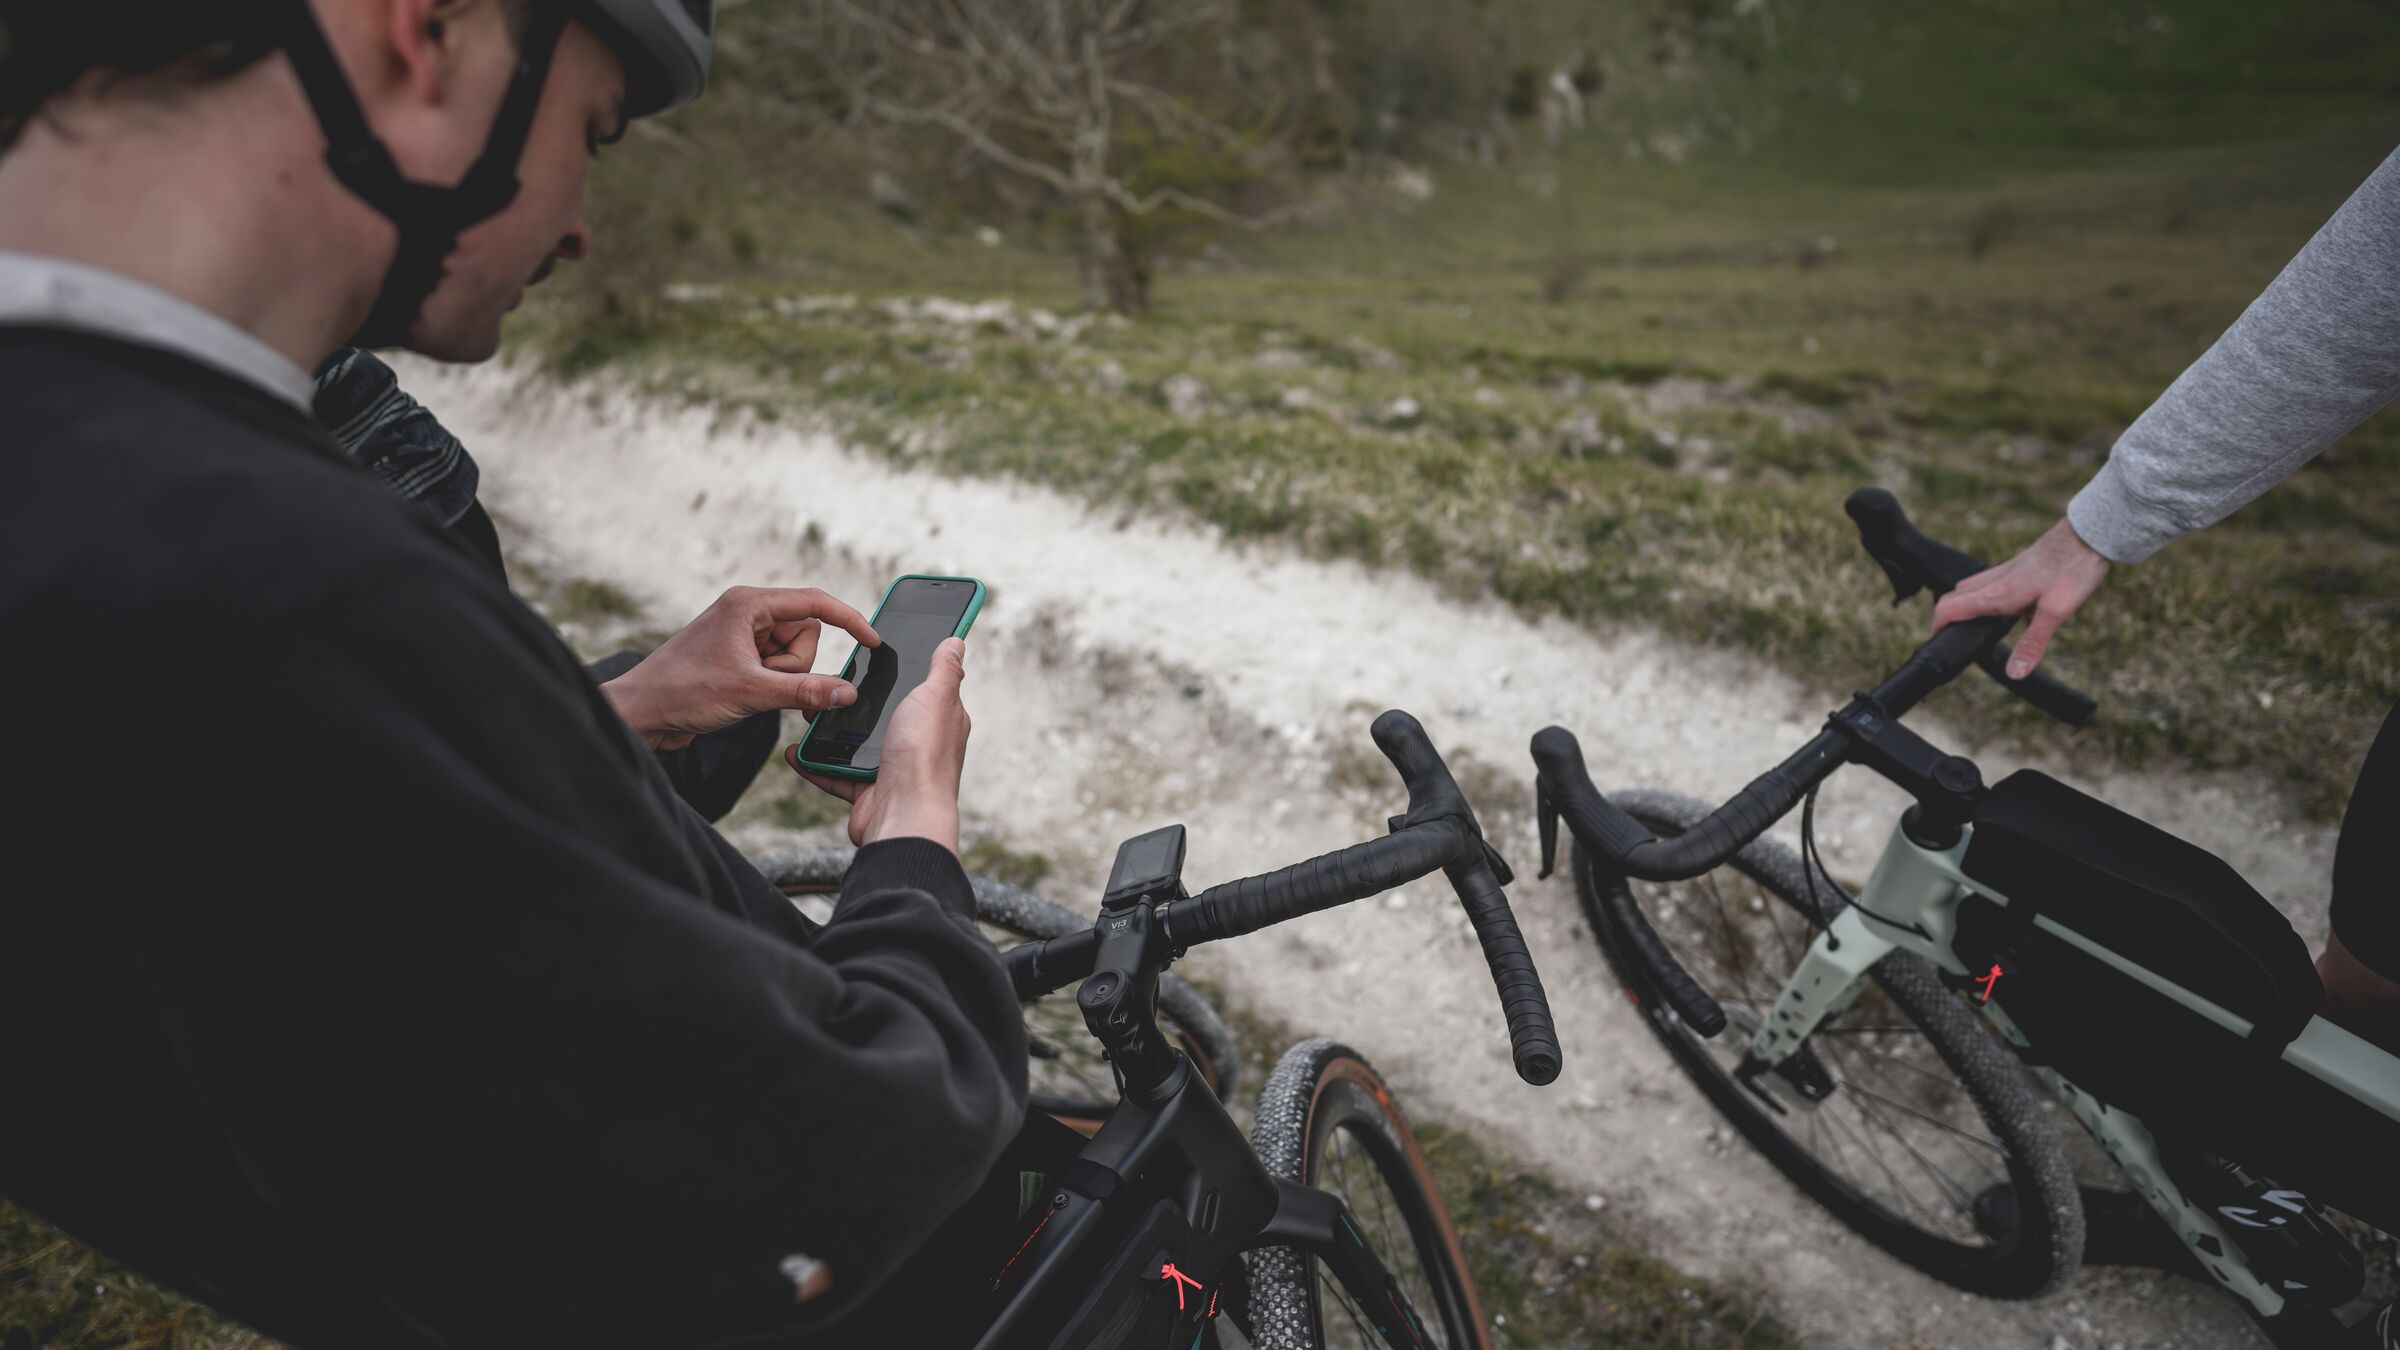 Die beste Fahrrad Navi App fürs Smartphone - eine Übersicht 